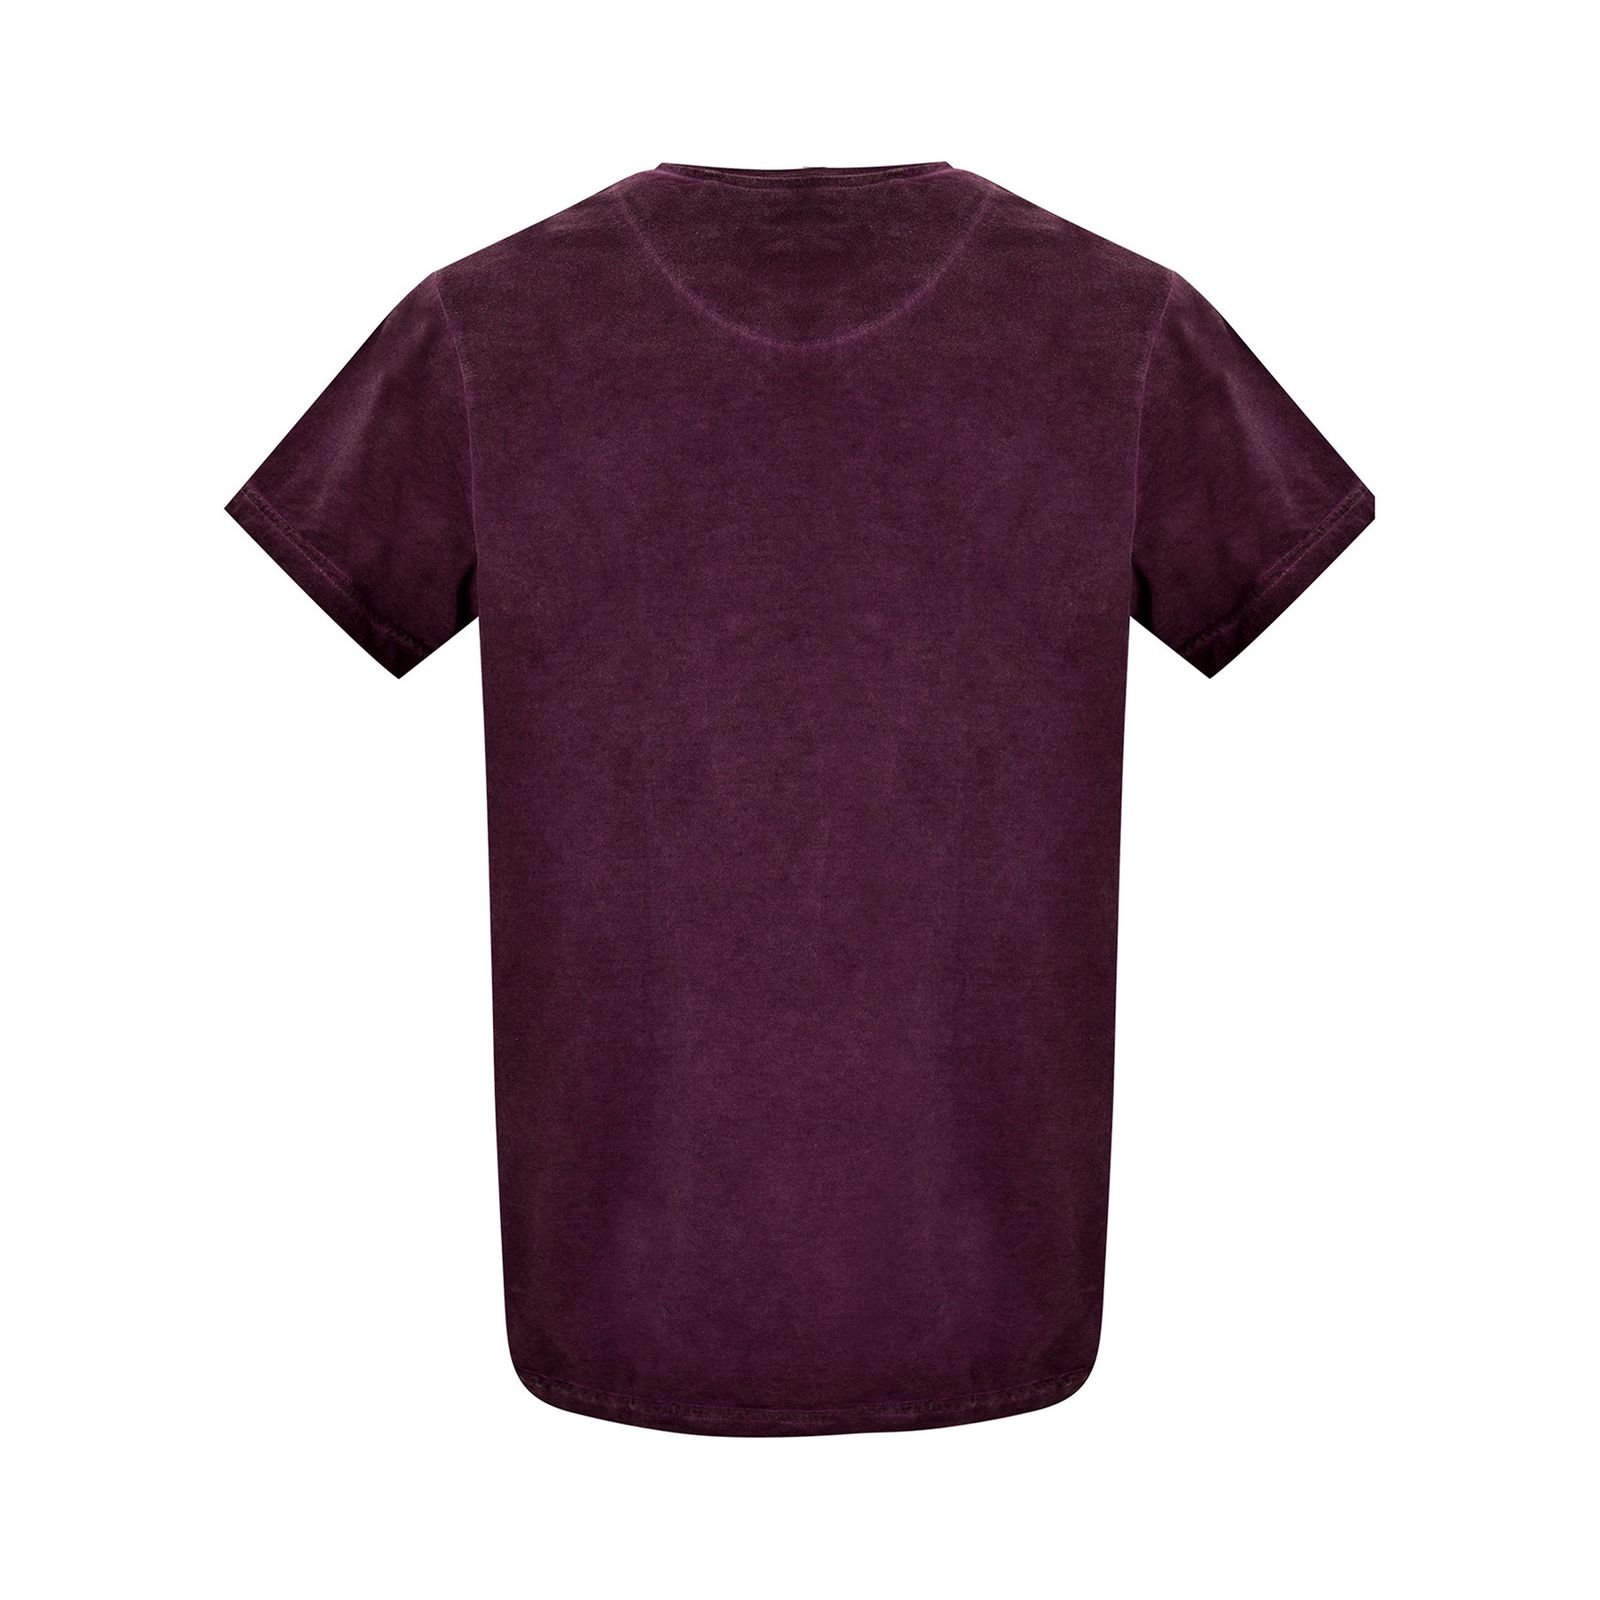 تی شرت آستین کوتاه مردانه بادی اسپینر مدل 1327 کد 1 رنگ بنفش -  - 3